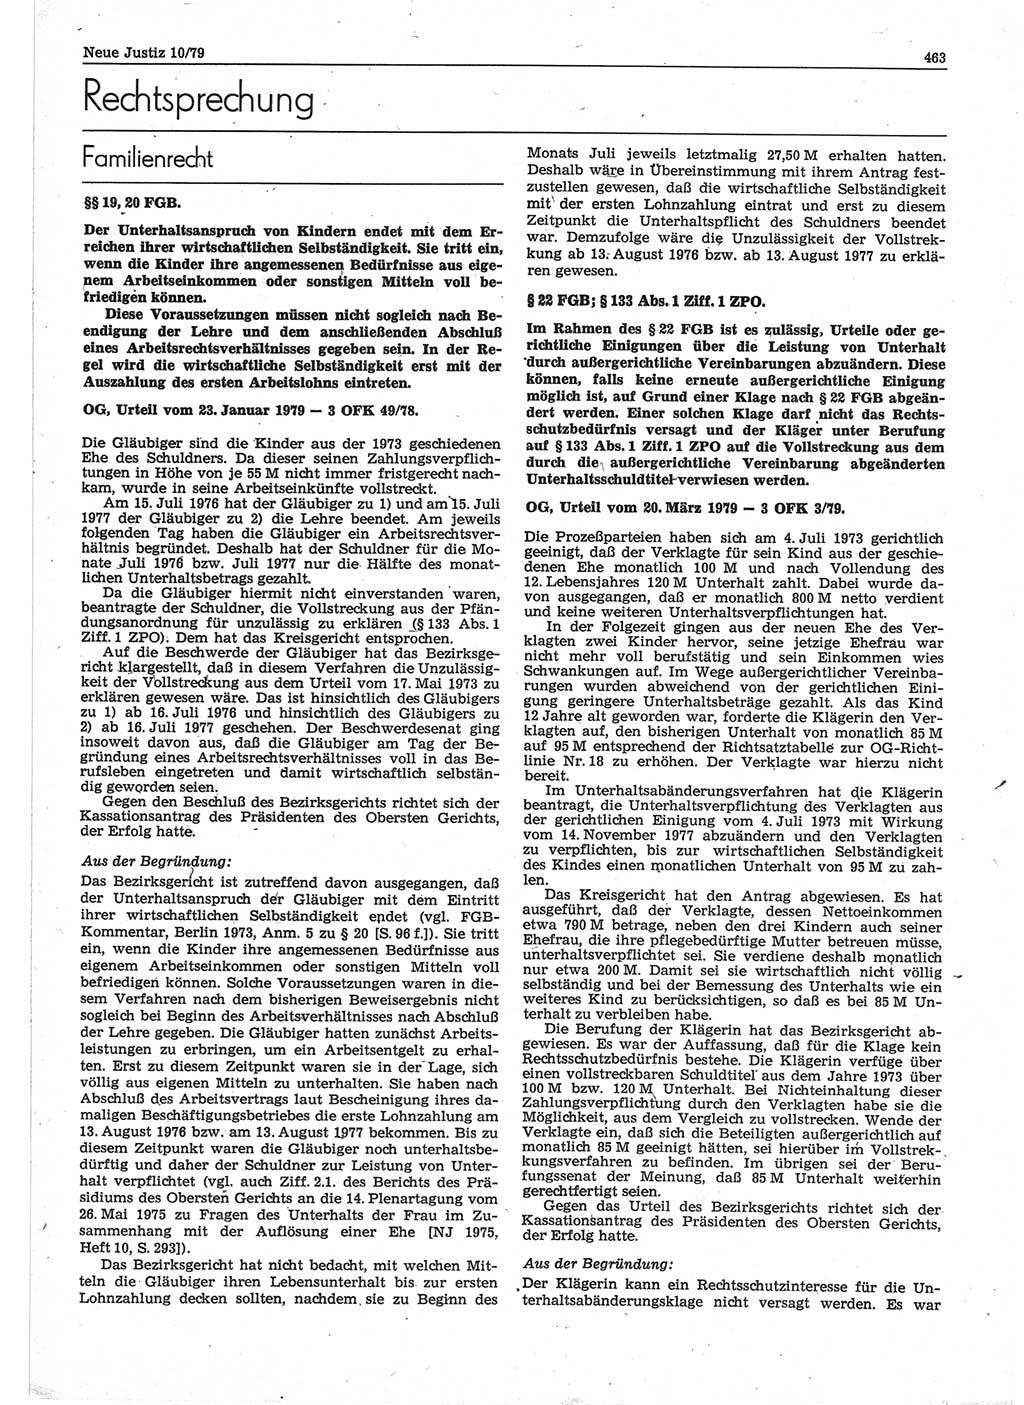 Neue Justiz (NJ), Zeitschrift für sozialistisches Recht und Gesetzlichkeit [Deutsche Demokratische Republik (DDR)], 33. Jahrgang 1979, Seite 463 (NJ DDR 1979, S. 463)